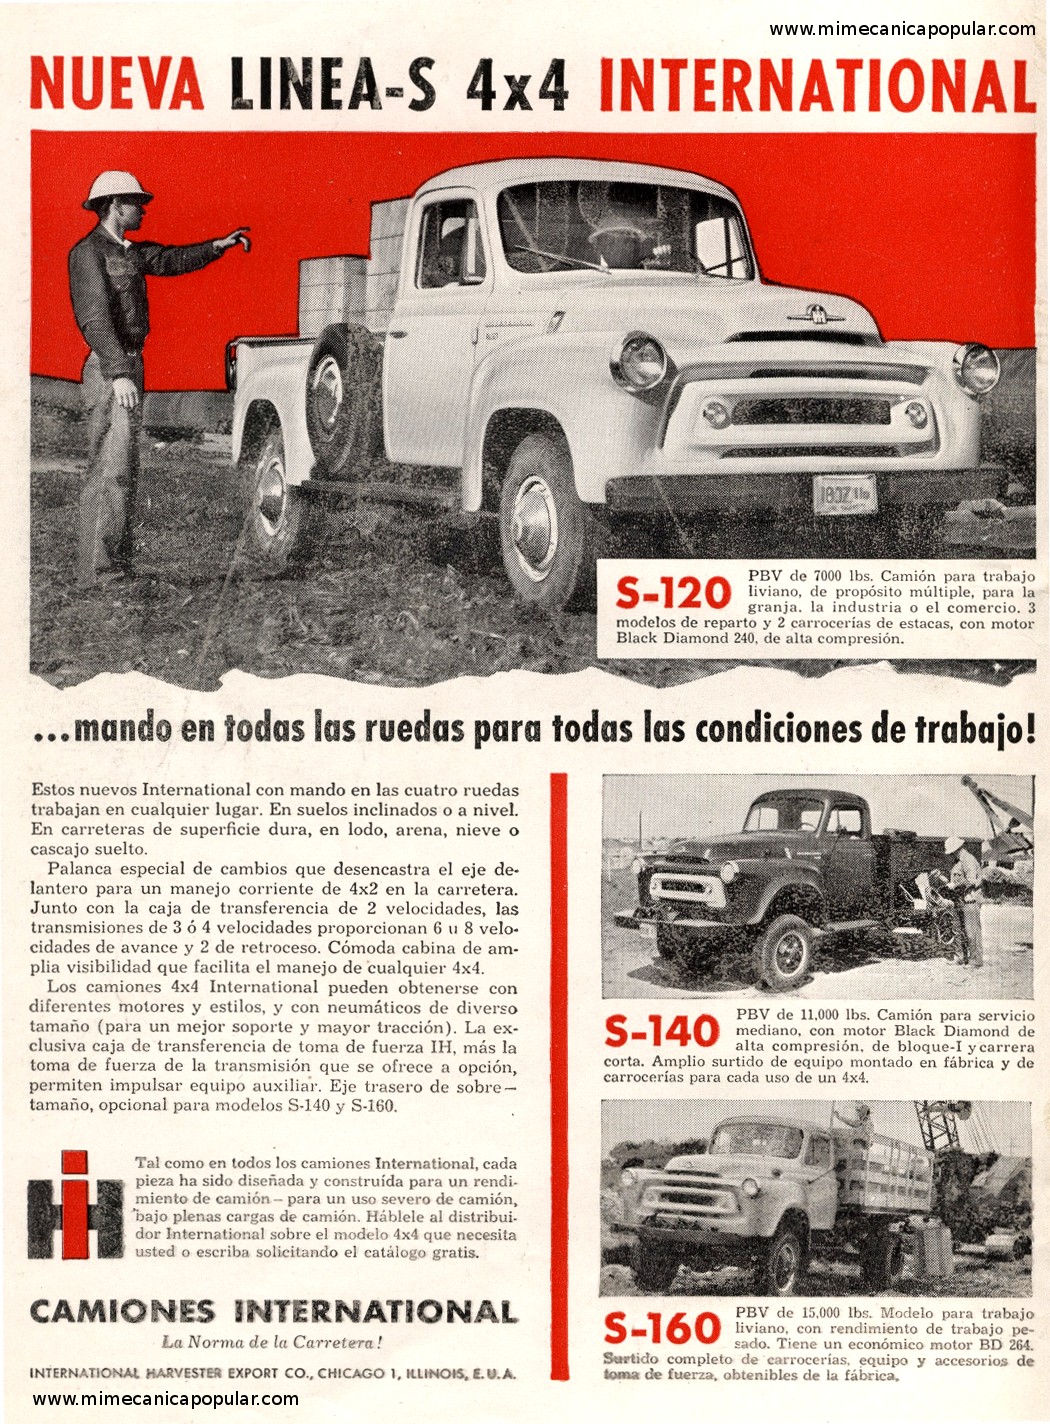 Publicidad - Camiones International Linea-S - Septiembre 1956